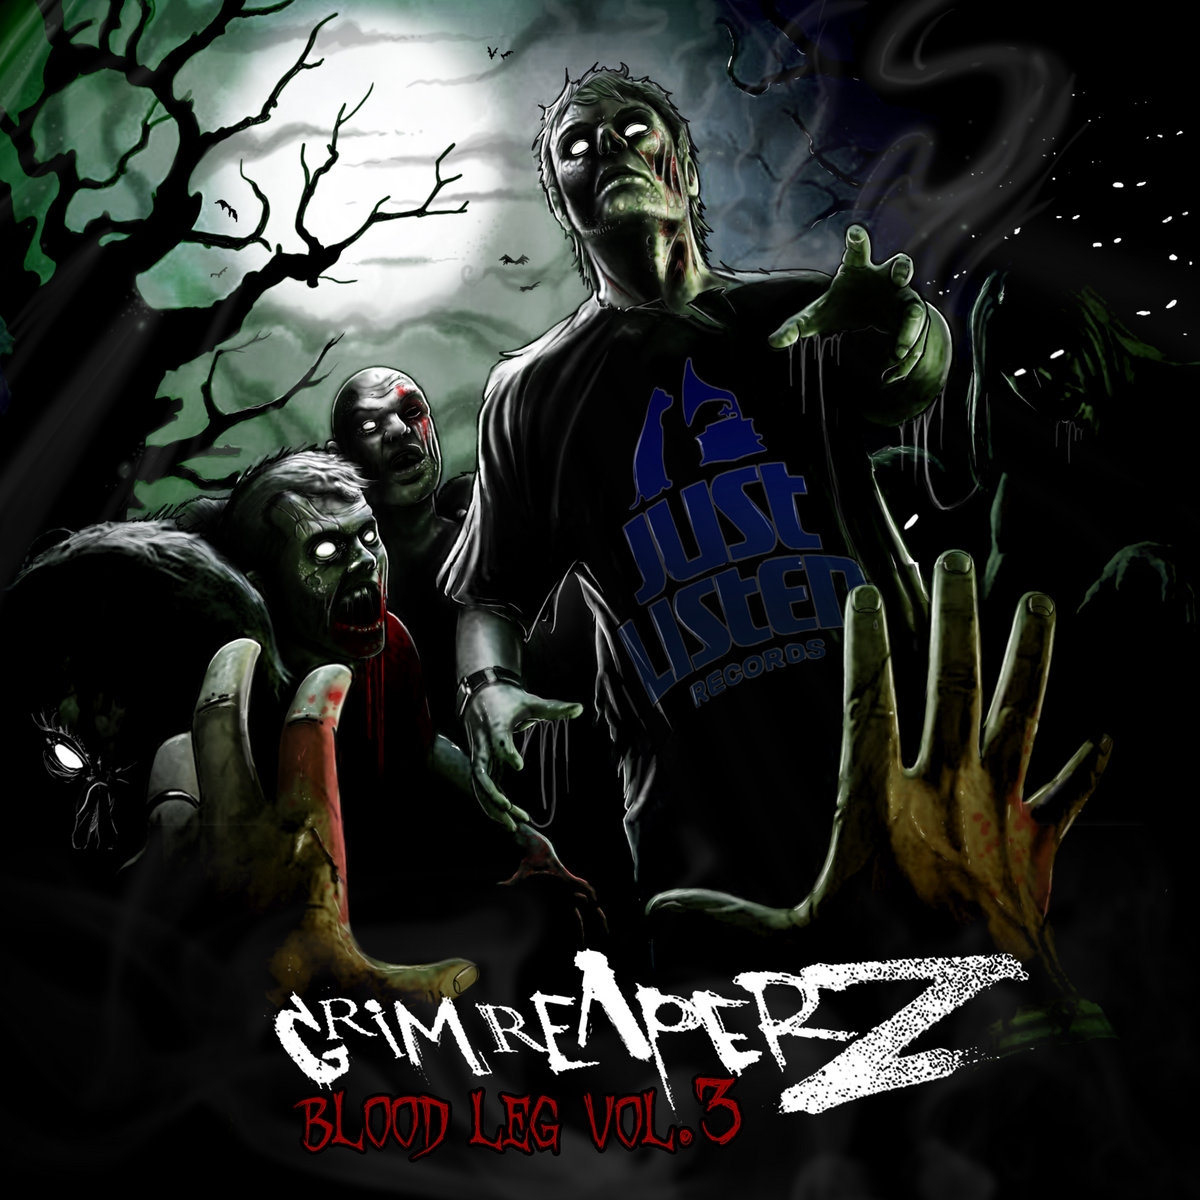 Album Vinyle "Grim Reaperz - Blood Leg vol.3" de grim reaperz sur Scredboutique.com